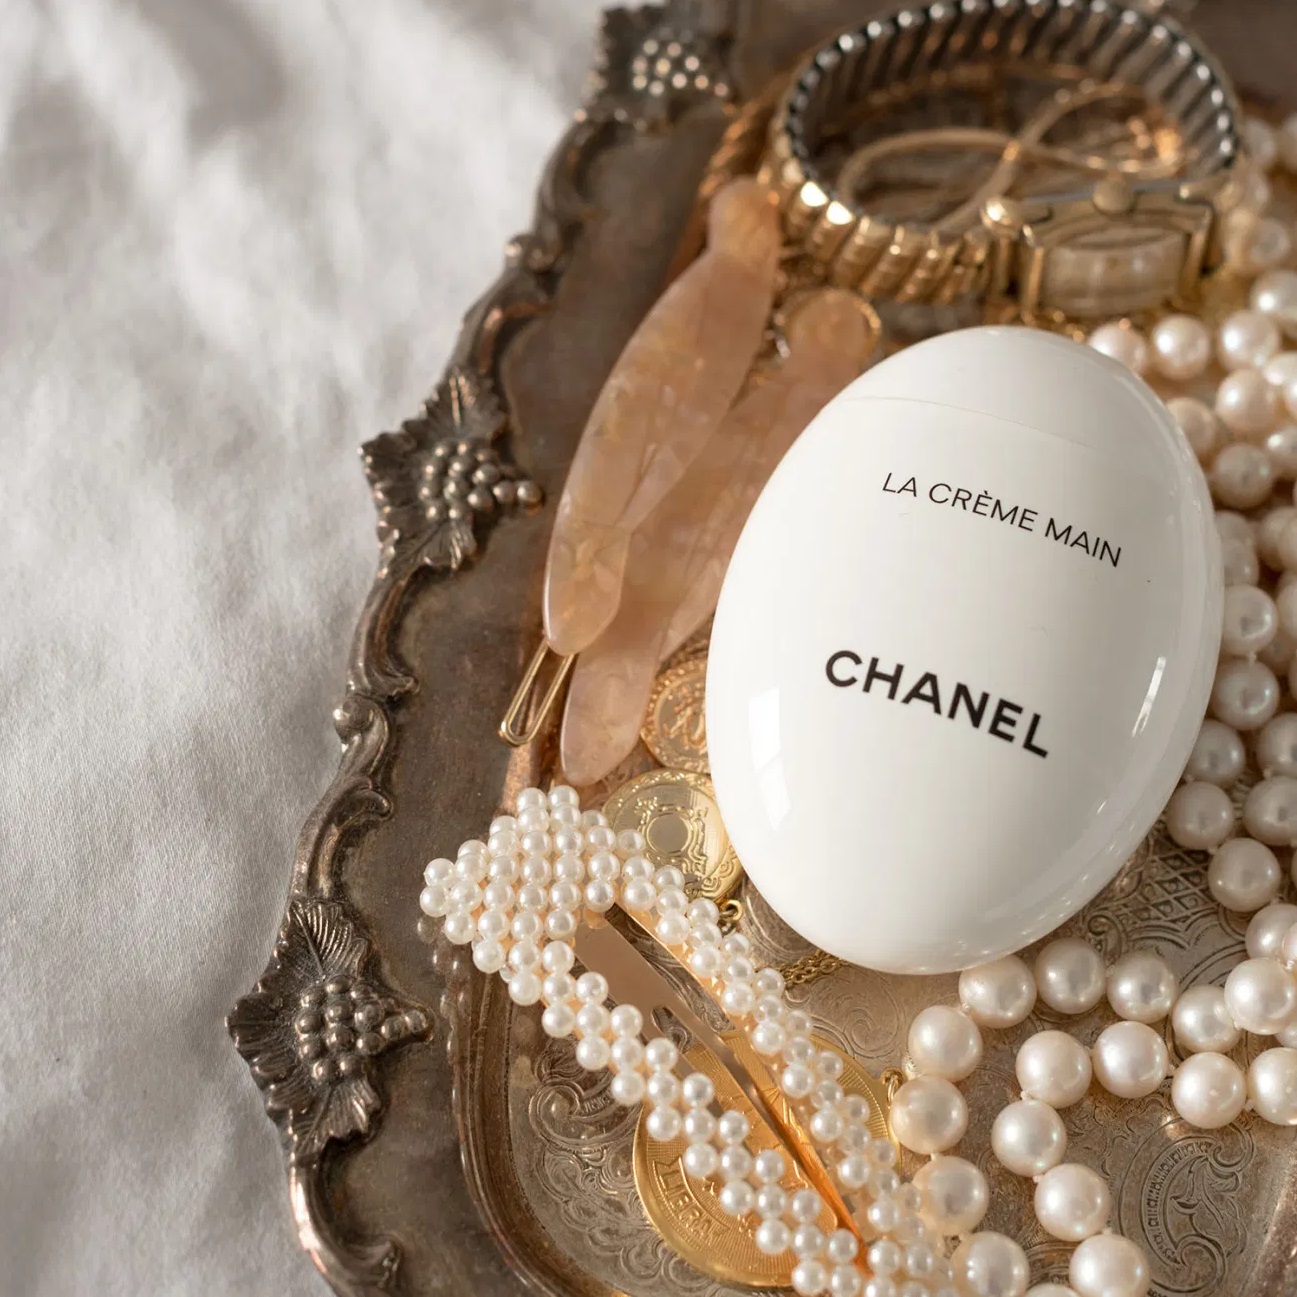 Chanel LA CRÈME MAIN Hand Cream 50ml